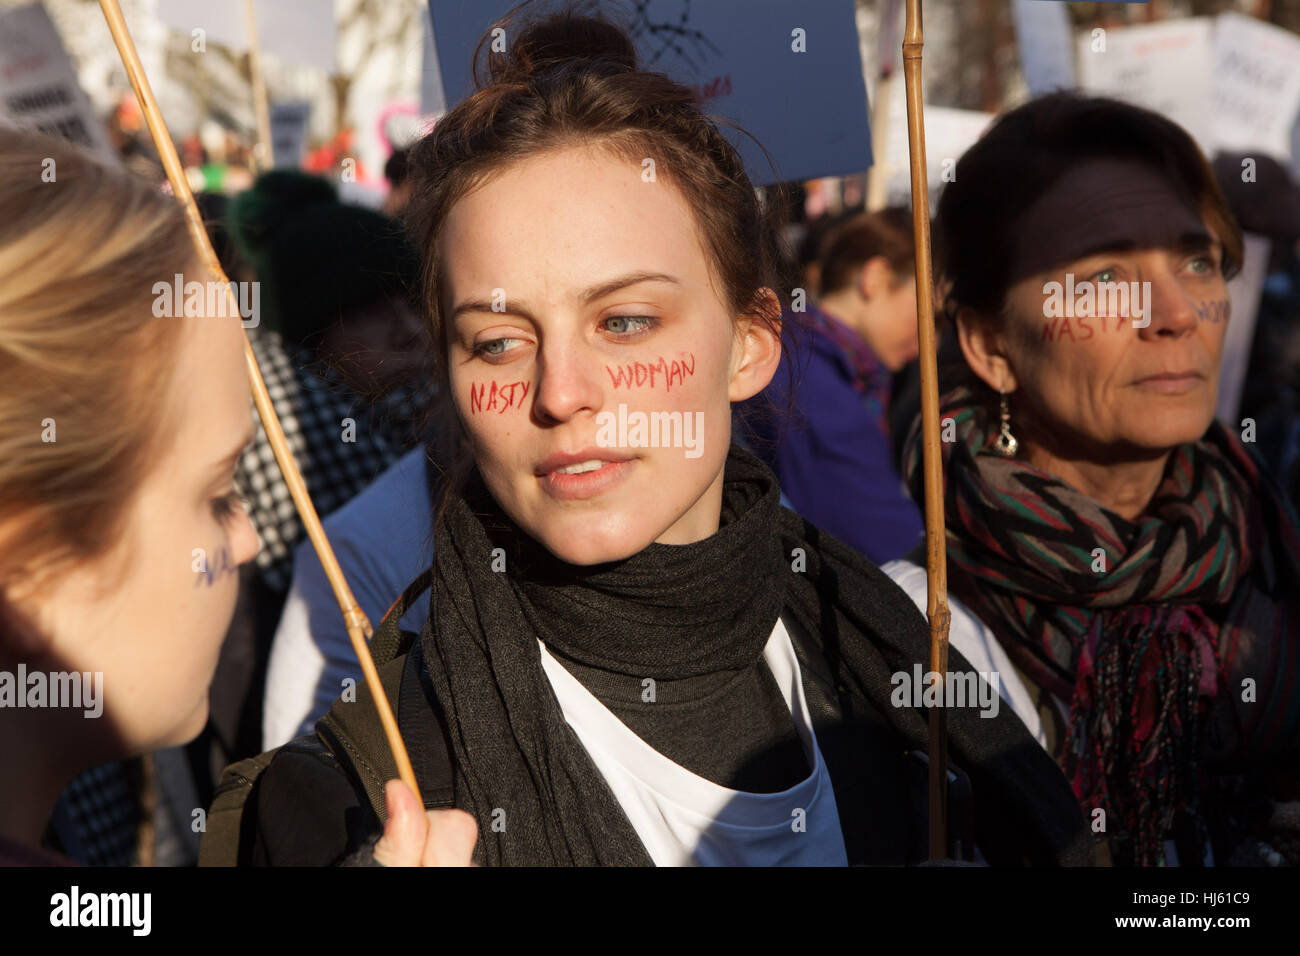 Londres, Reino Unido. El 21 de enero, 2017. La marcha de las mujeres, las mujeres manifestantes con "desagradable" escrita en la mujer enfrenta, de cerca. Crédito: Alan Gignoux/Alamy Live News Foto de stock